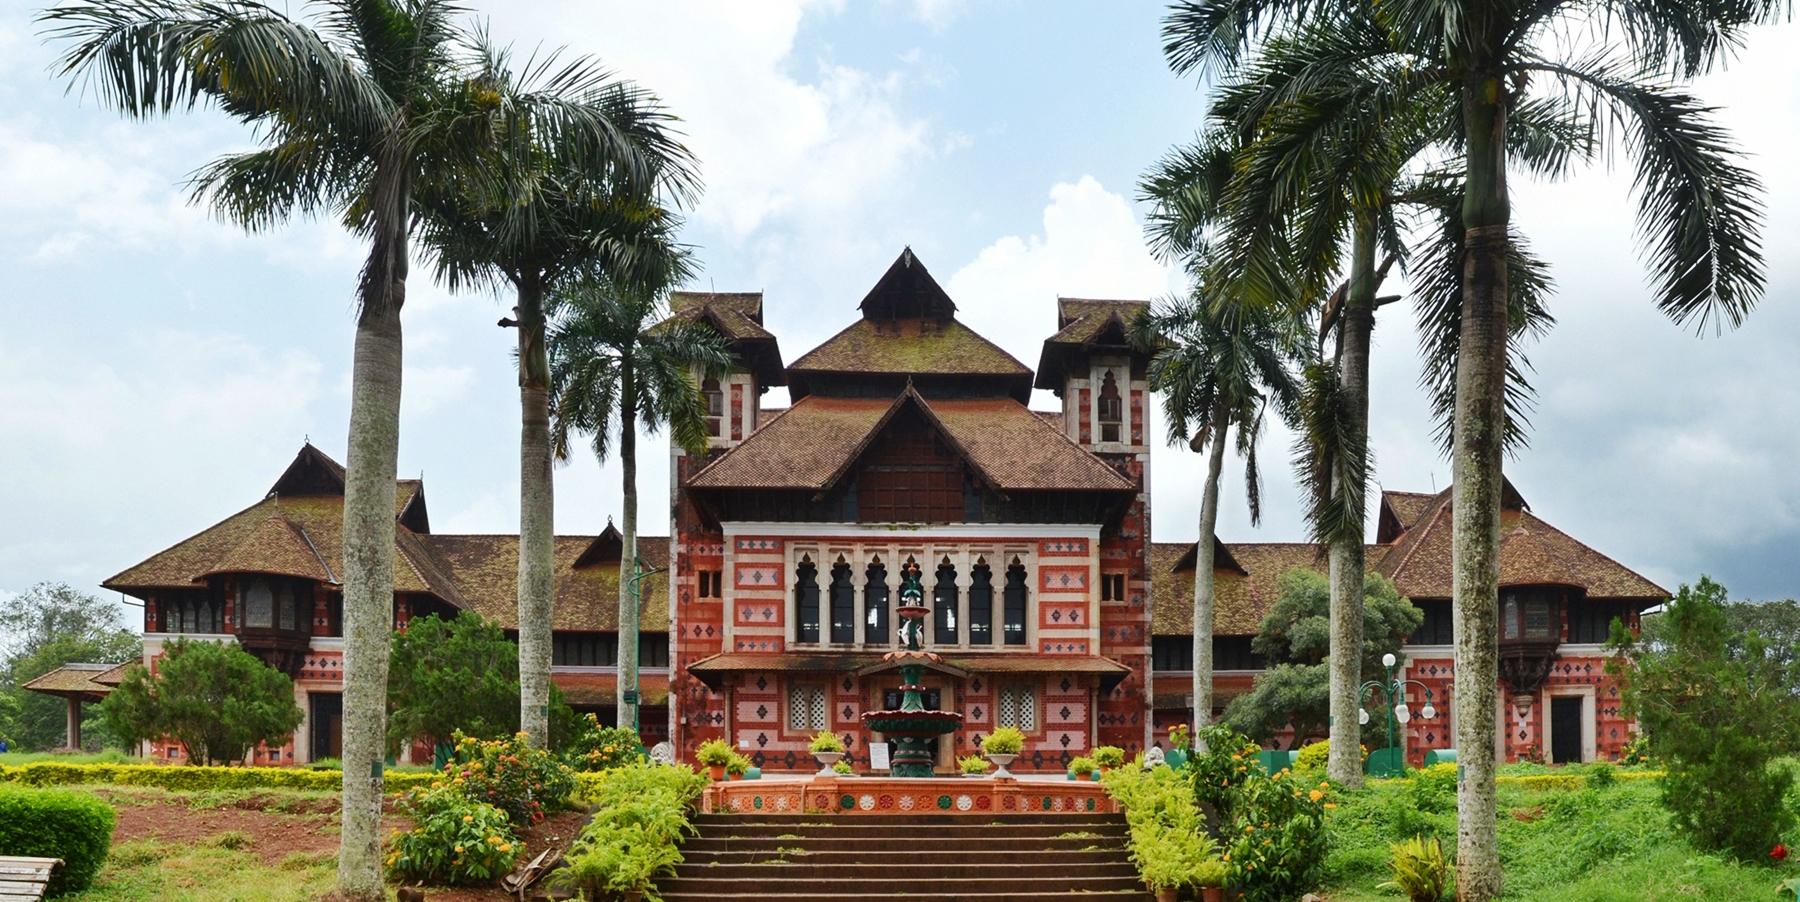 Thiruvananthapuram Museum and Zoo